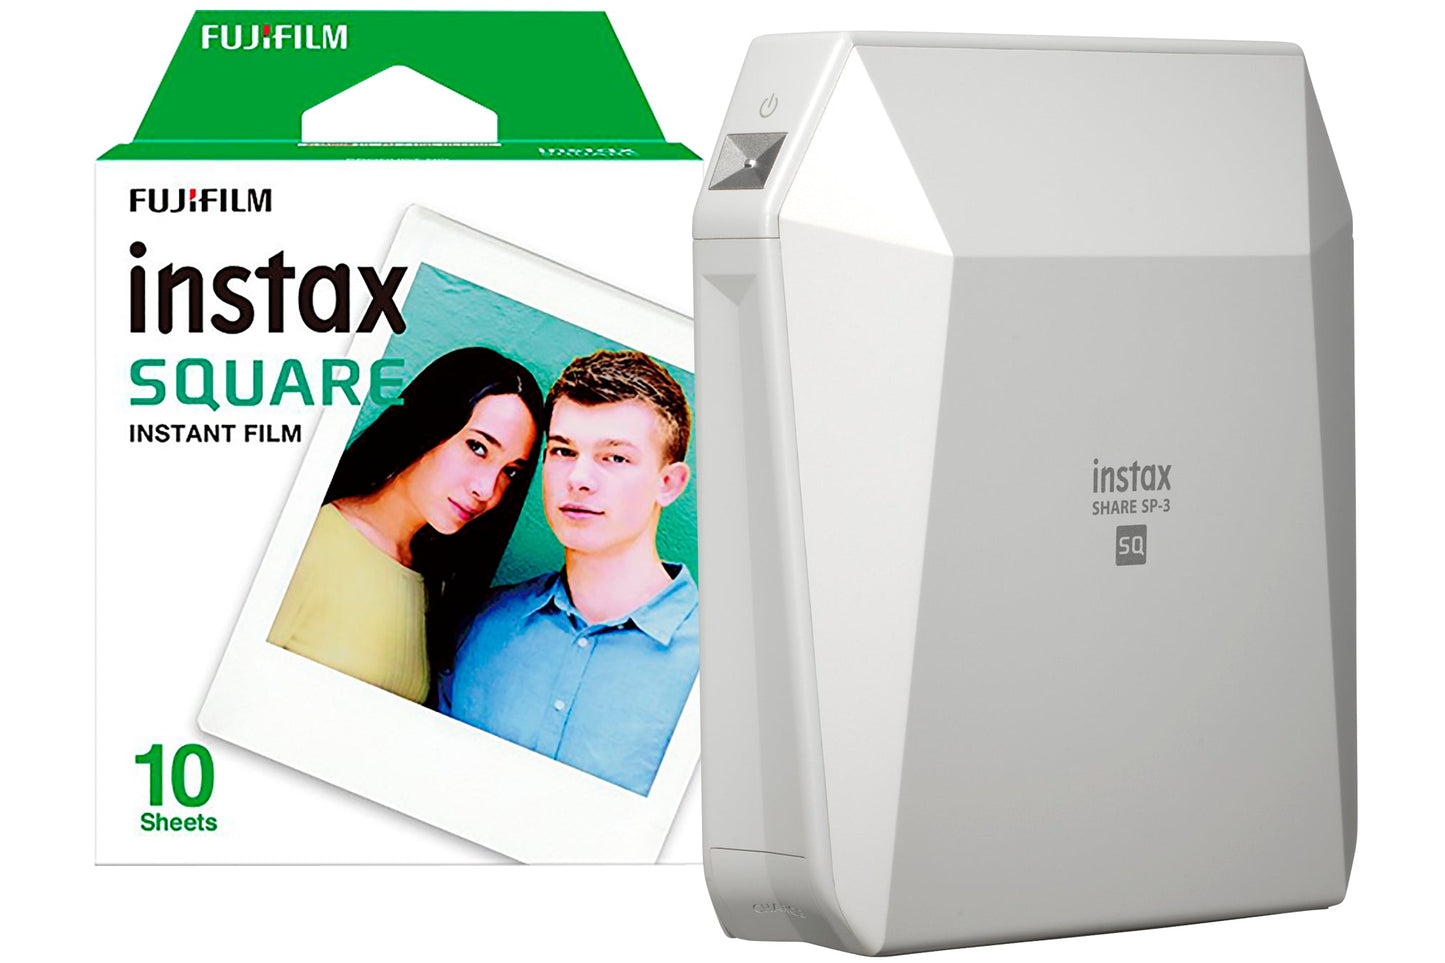 Fujifilm Instax SP-3 Share Square Wireless Photo Printer - White - maplin.co.uk